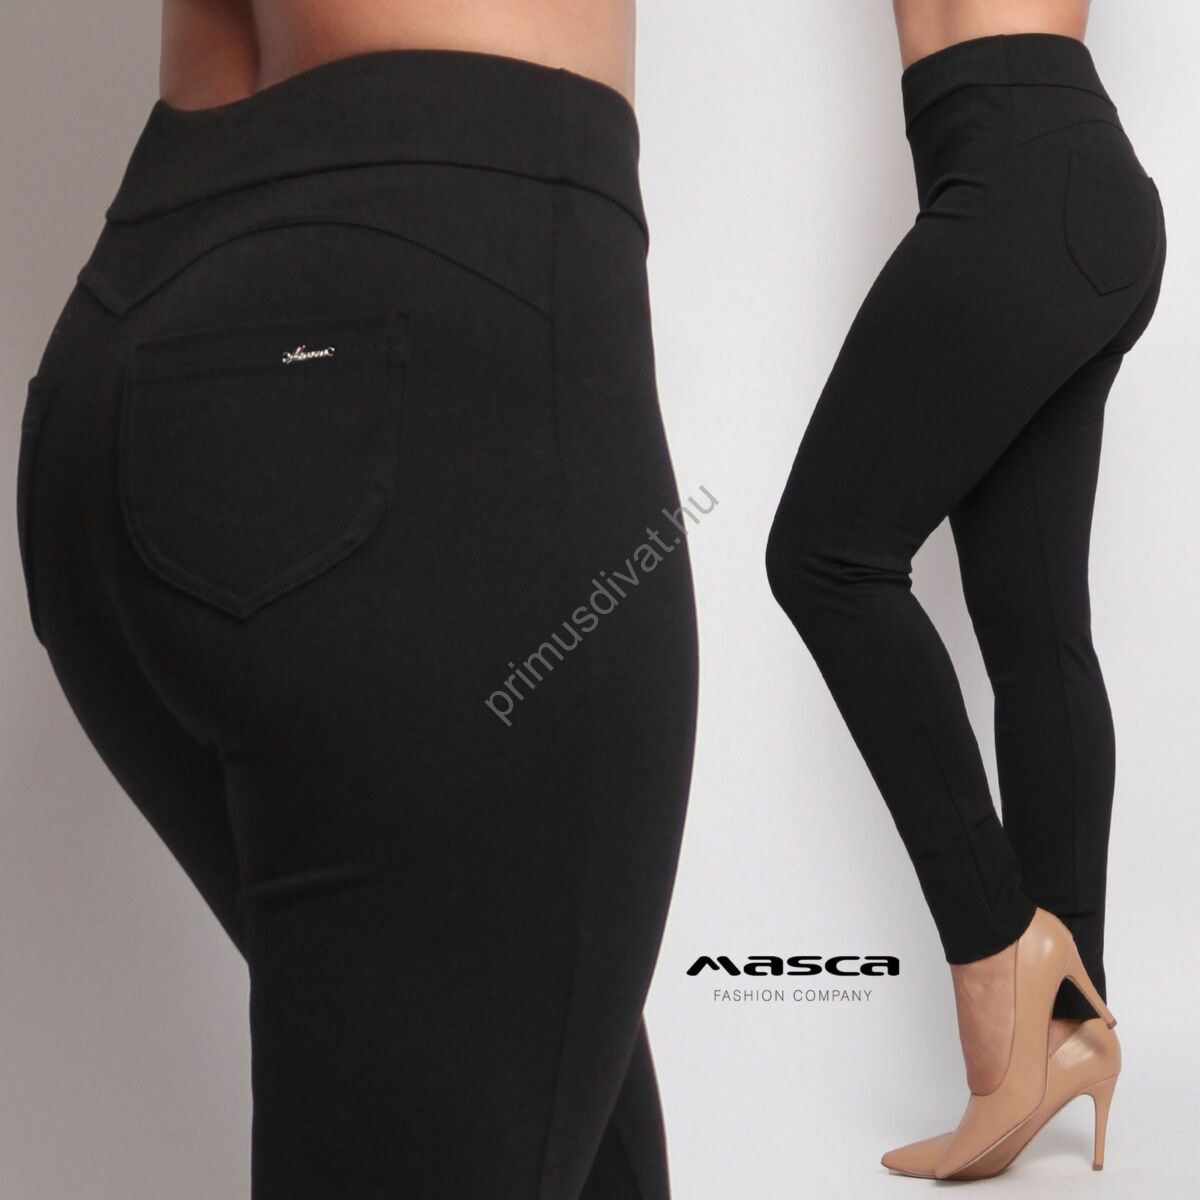 Masca Fashion magasított derekú fekete elasztikus punto leggings, cicanadrág, hátul íves szabással, zsebekkel